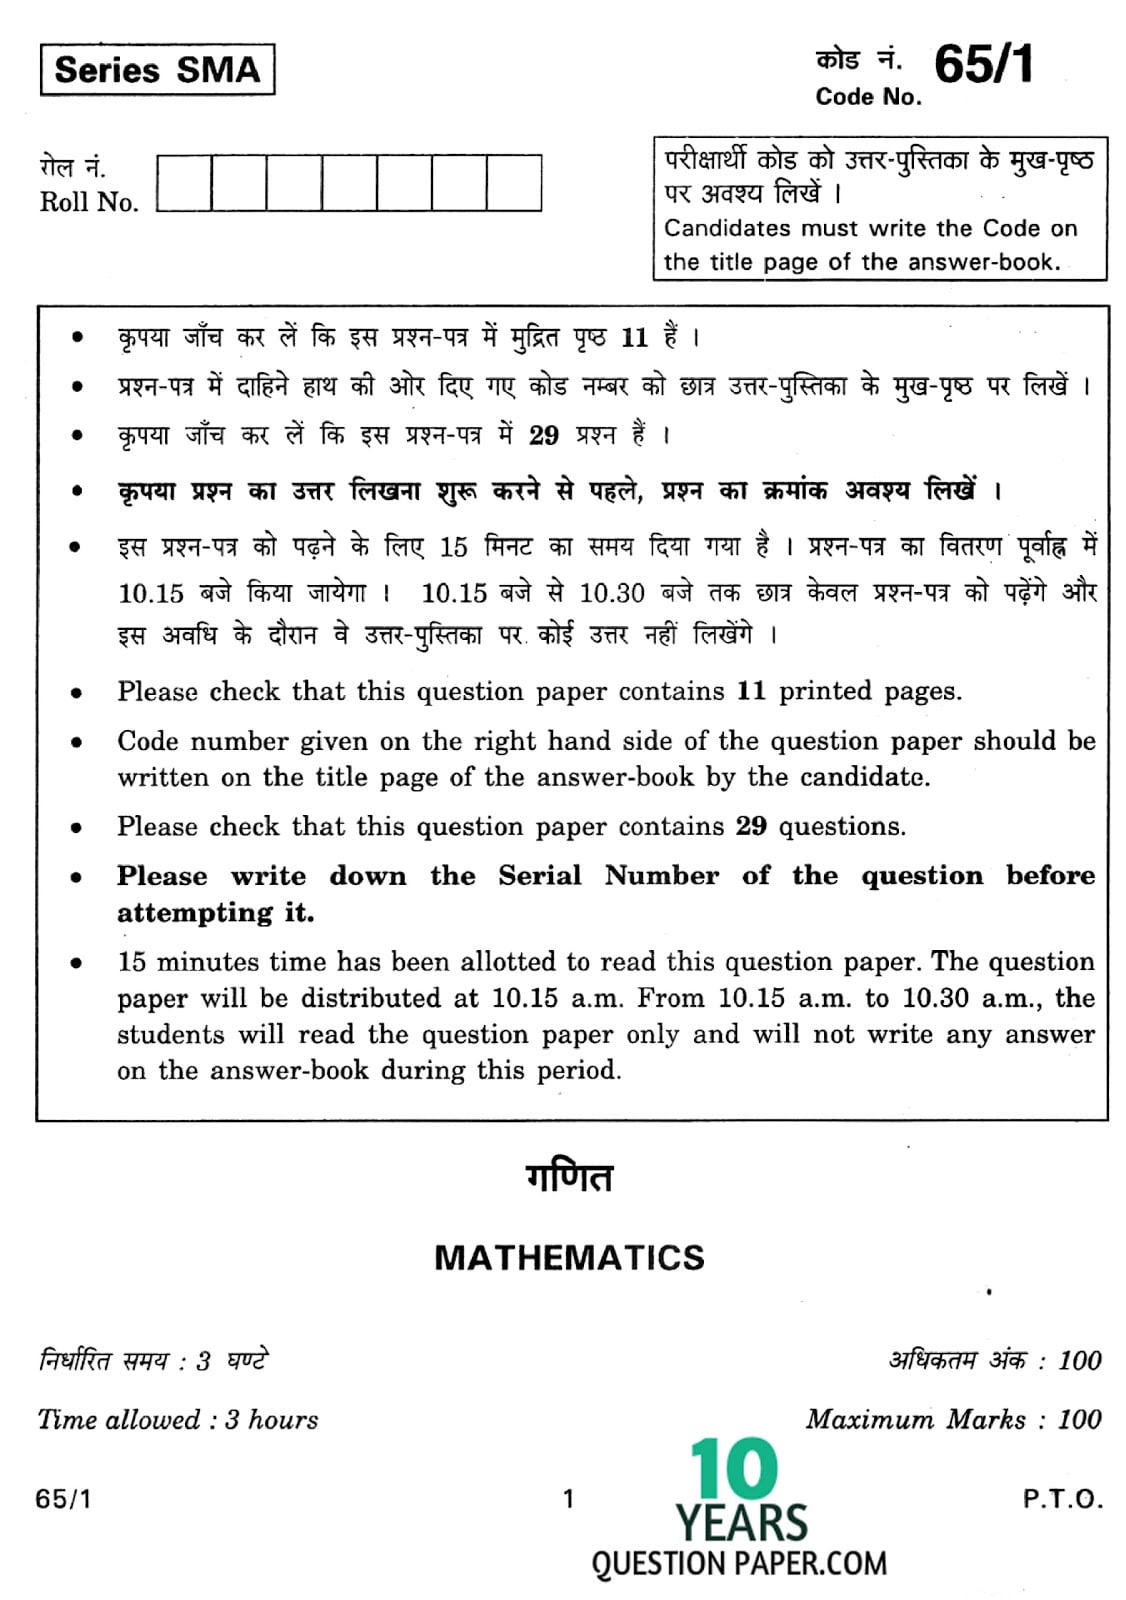 CBSE Class 12 Mathematics 2012 Question Paper